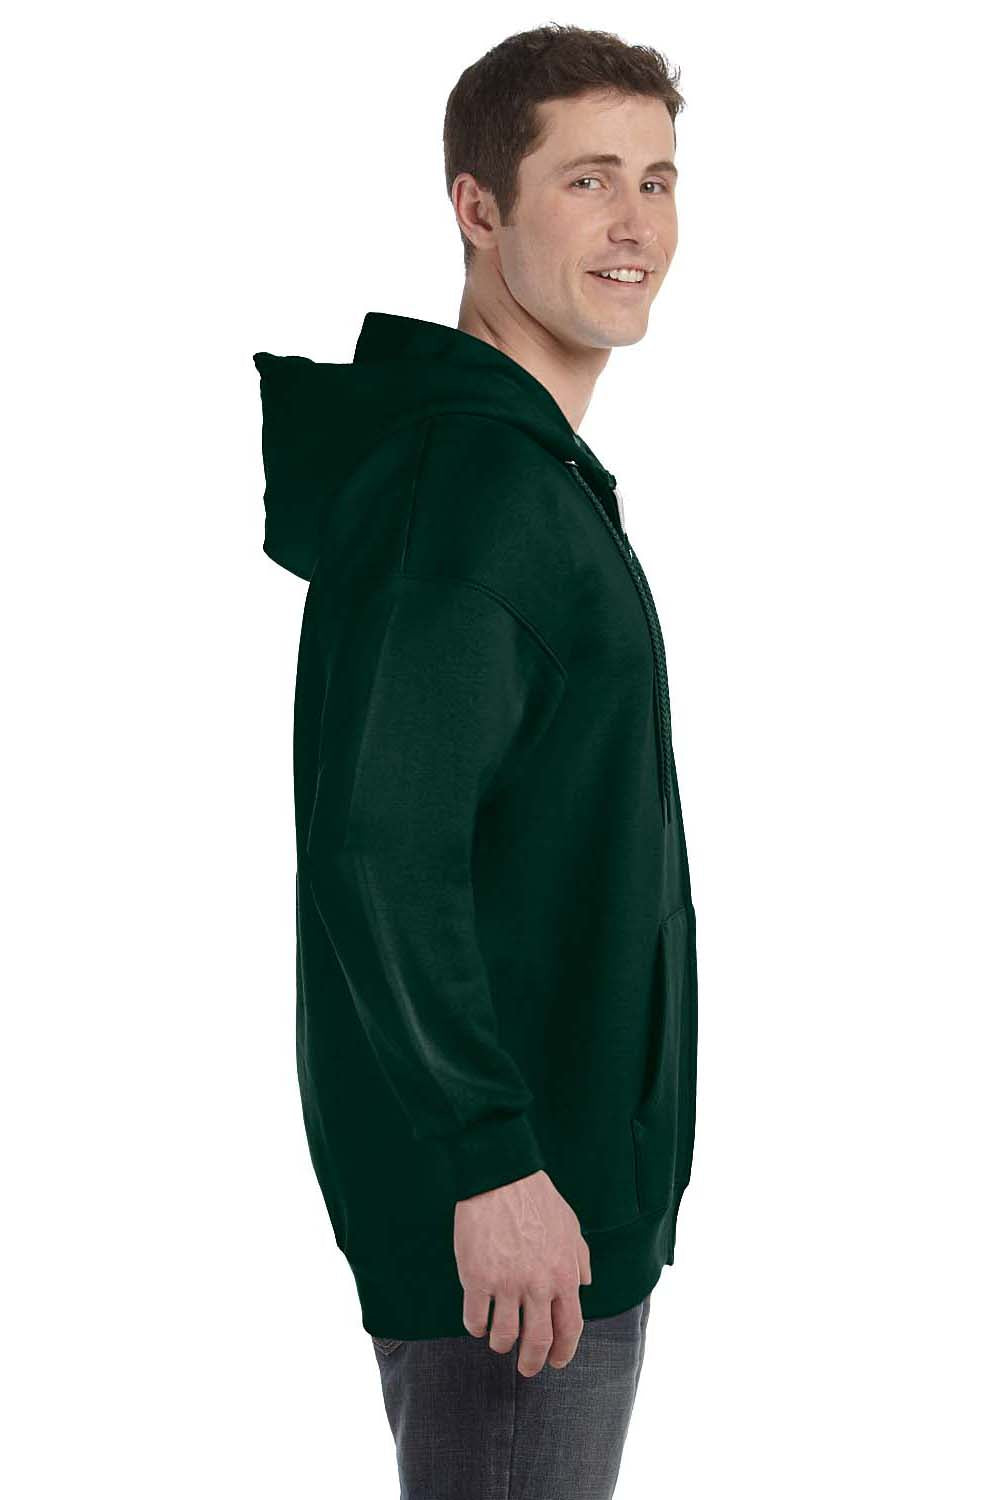 Hanes F280 Mens Ultimate Cotton PrintPro XP Full Zip Hooded Sweatshirt Hoodie Forest Green Side